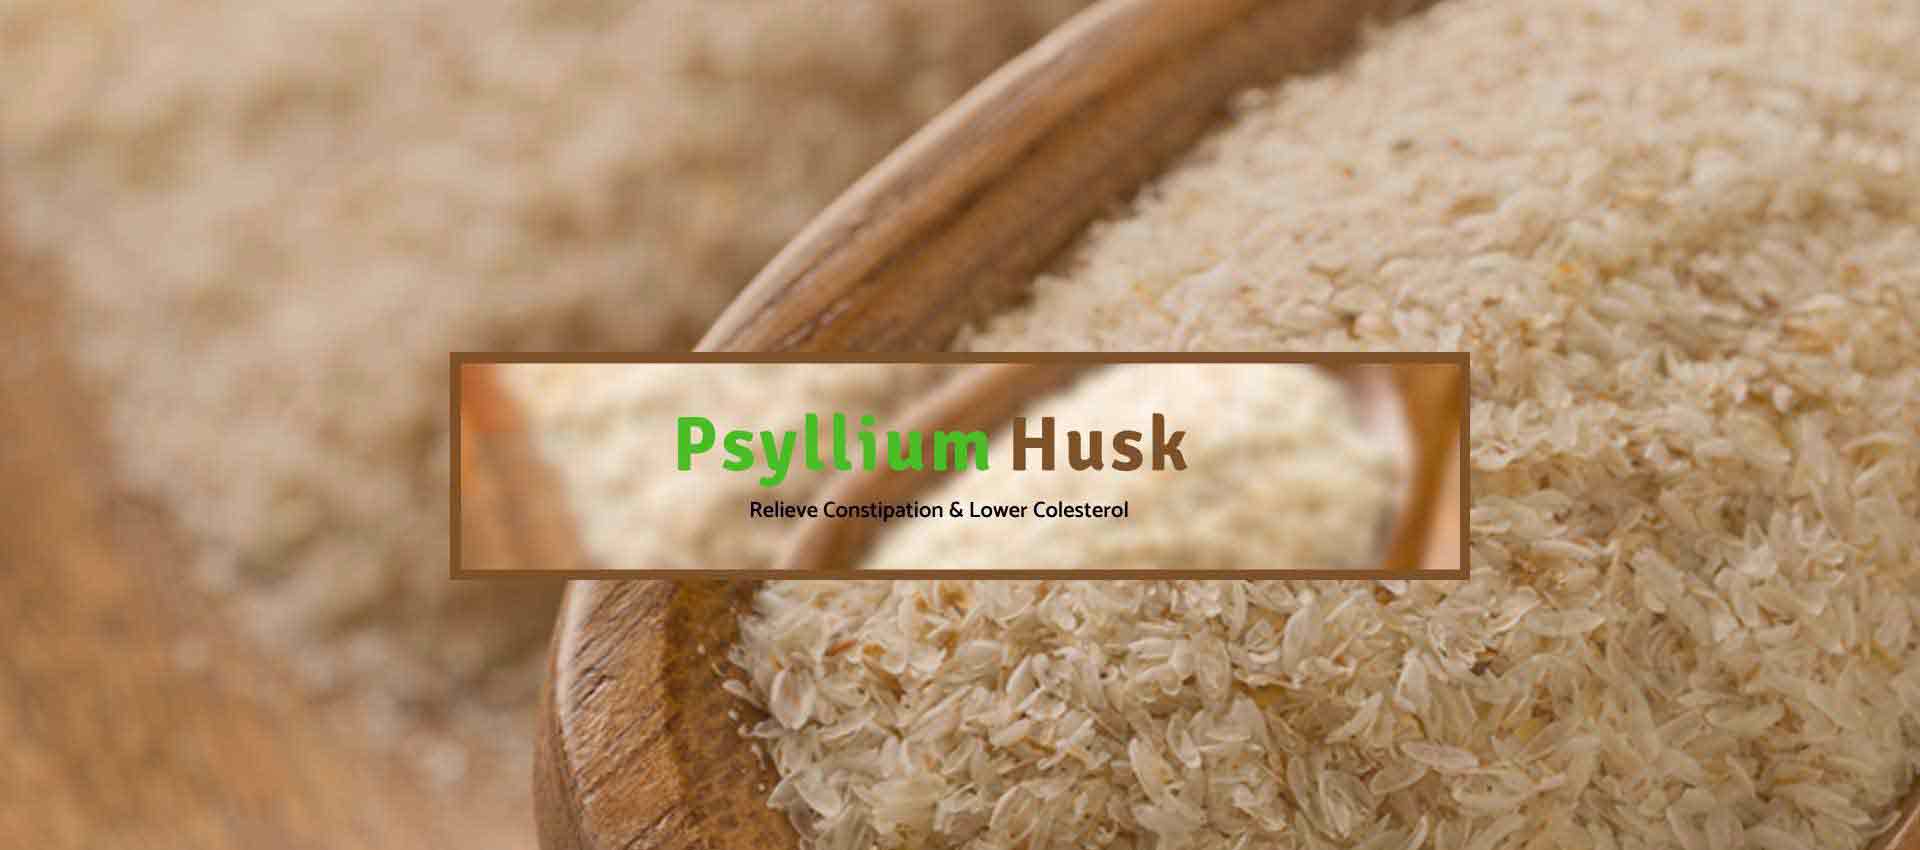 Psyllium Husk Manufacturers in Jordan